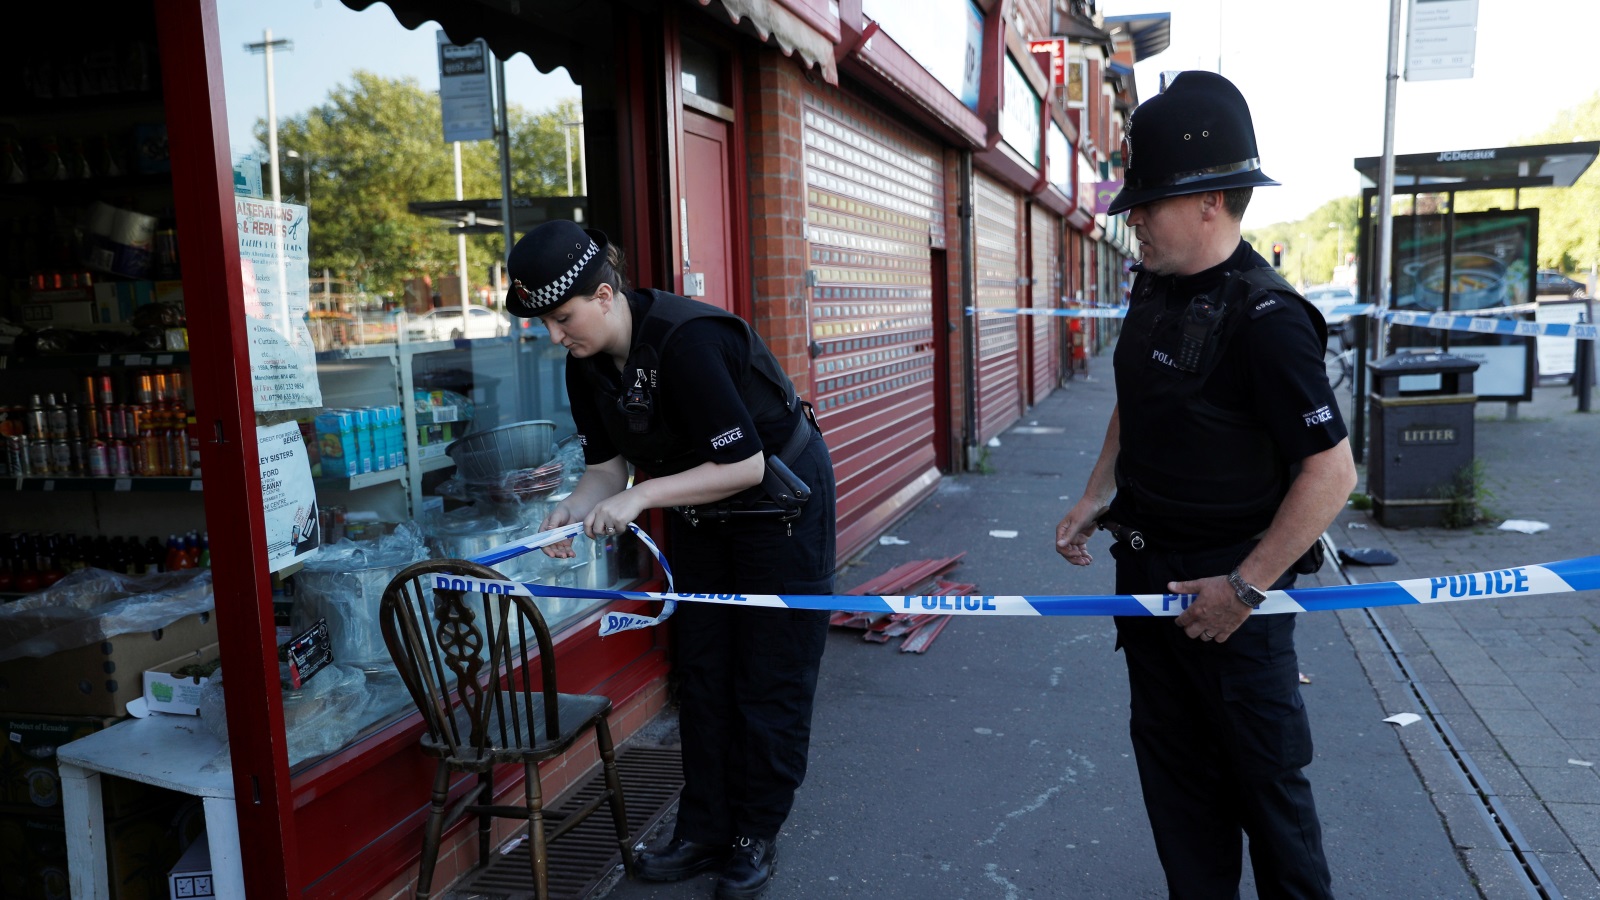  الشرطة البريطانية اعتقلت 14 شخصا تشتبه في علاقتهم بهجوم مانشستر